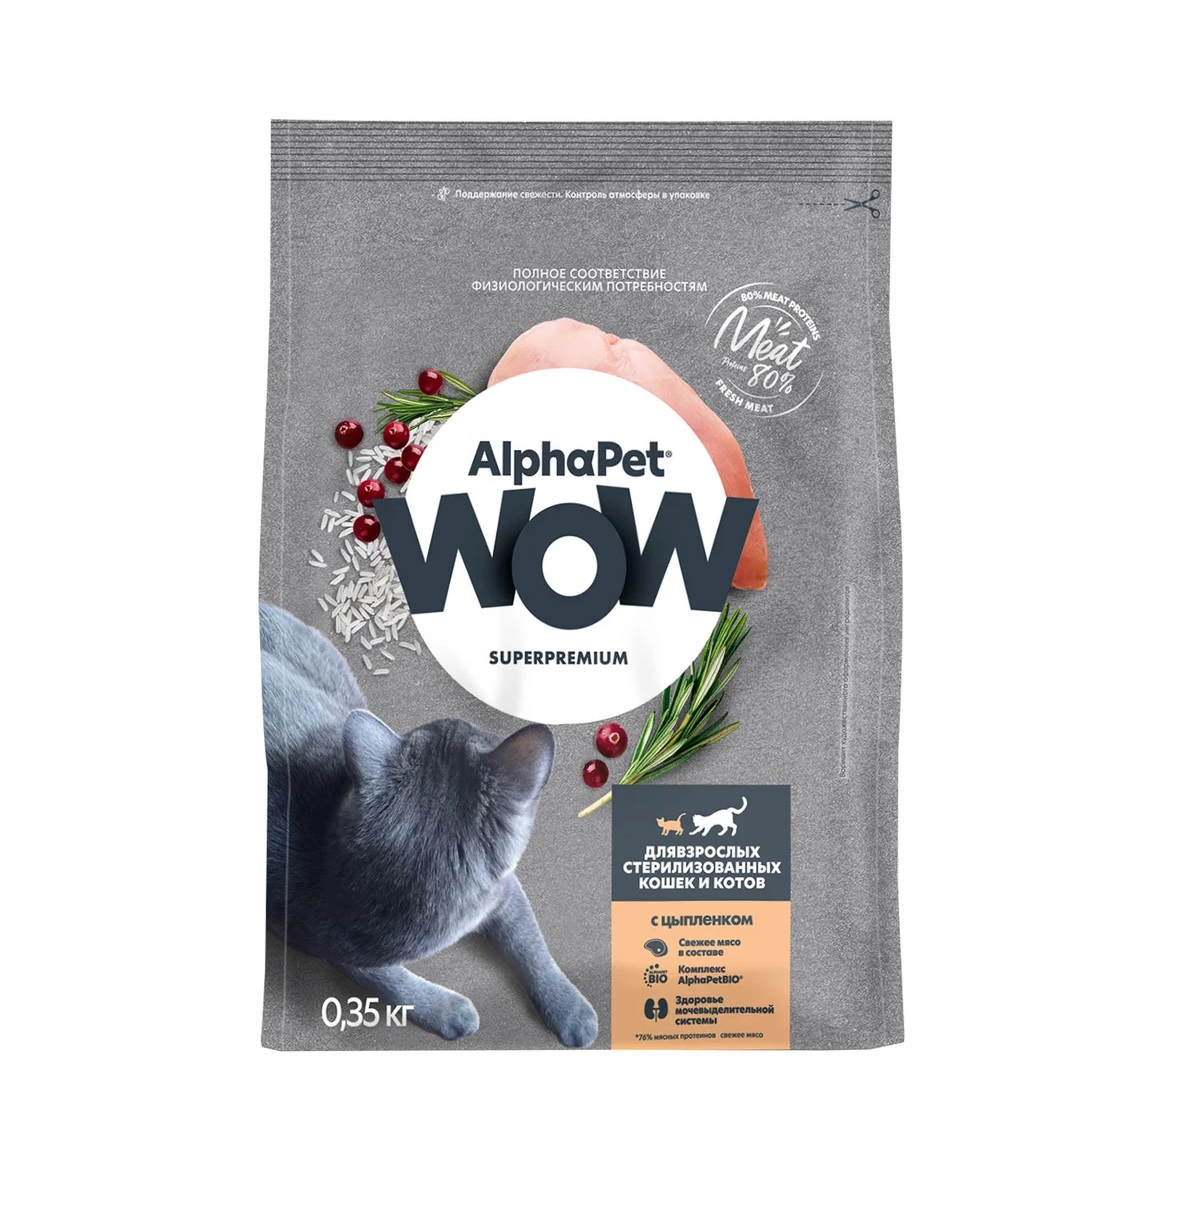 АльфаПет WOW 350гр - для Стерилизованных кошек, Цыпленок (Alpha Pet WOW)